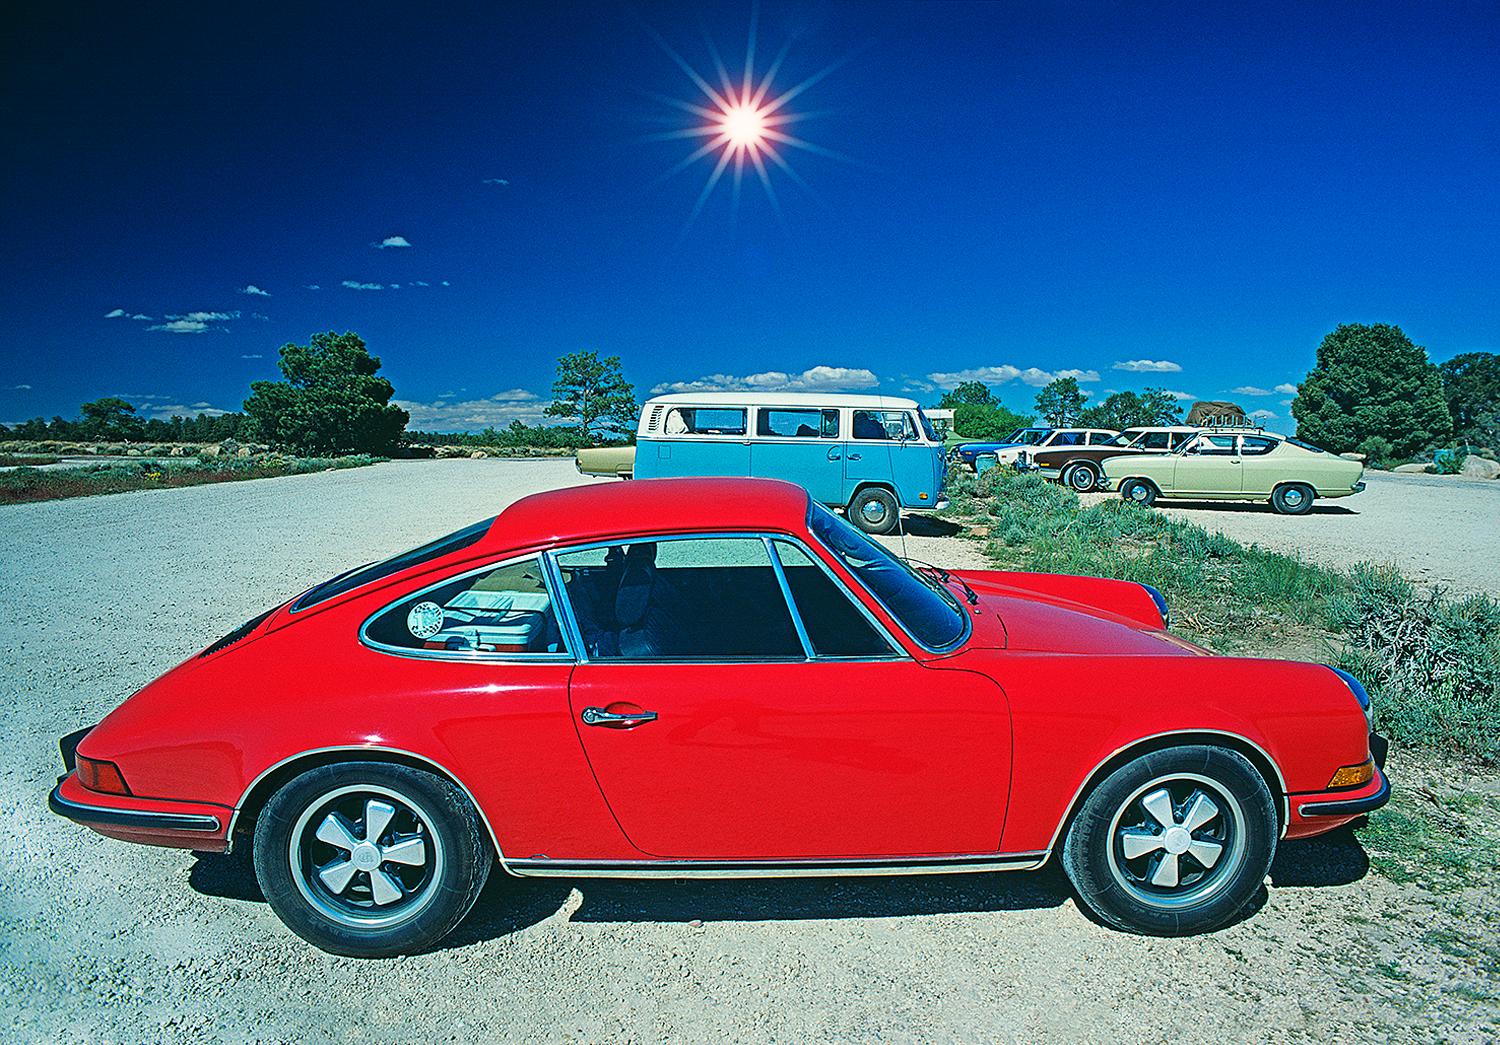 Mitchell Funk Color Photograph – Rotes Porsche-Minibus im Vintage-Stil mit klassischem Volkswagen-Design